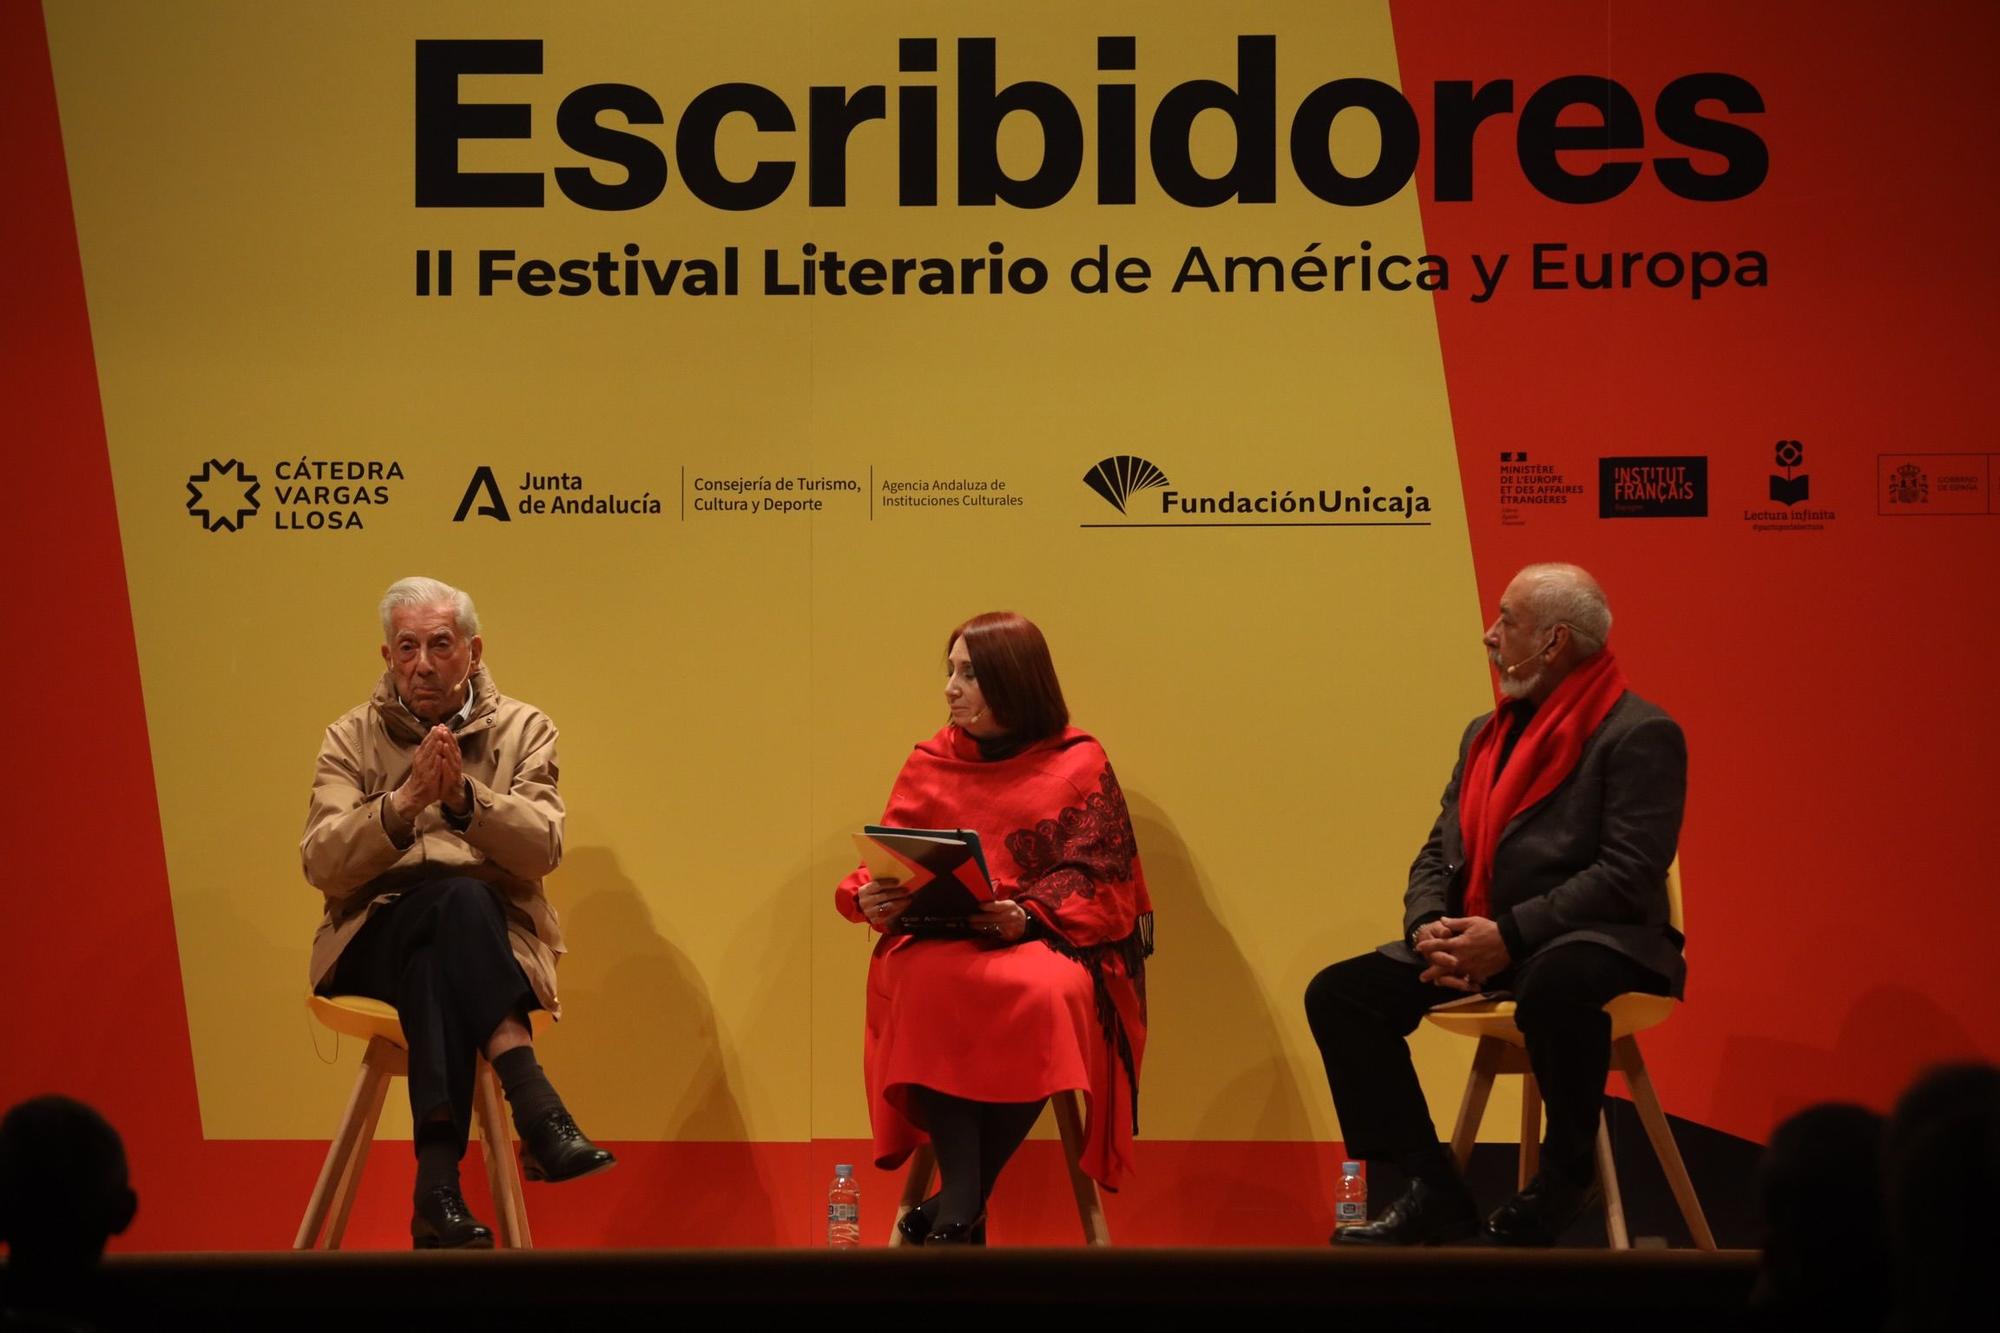 Acto inaugural del II Festival Literario de América y Europa 'Escribidores', en la sala Unicaja de conciertos María Cristina.